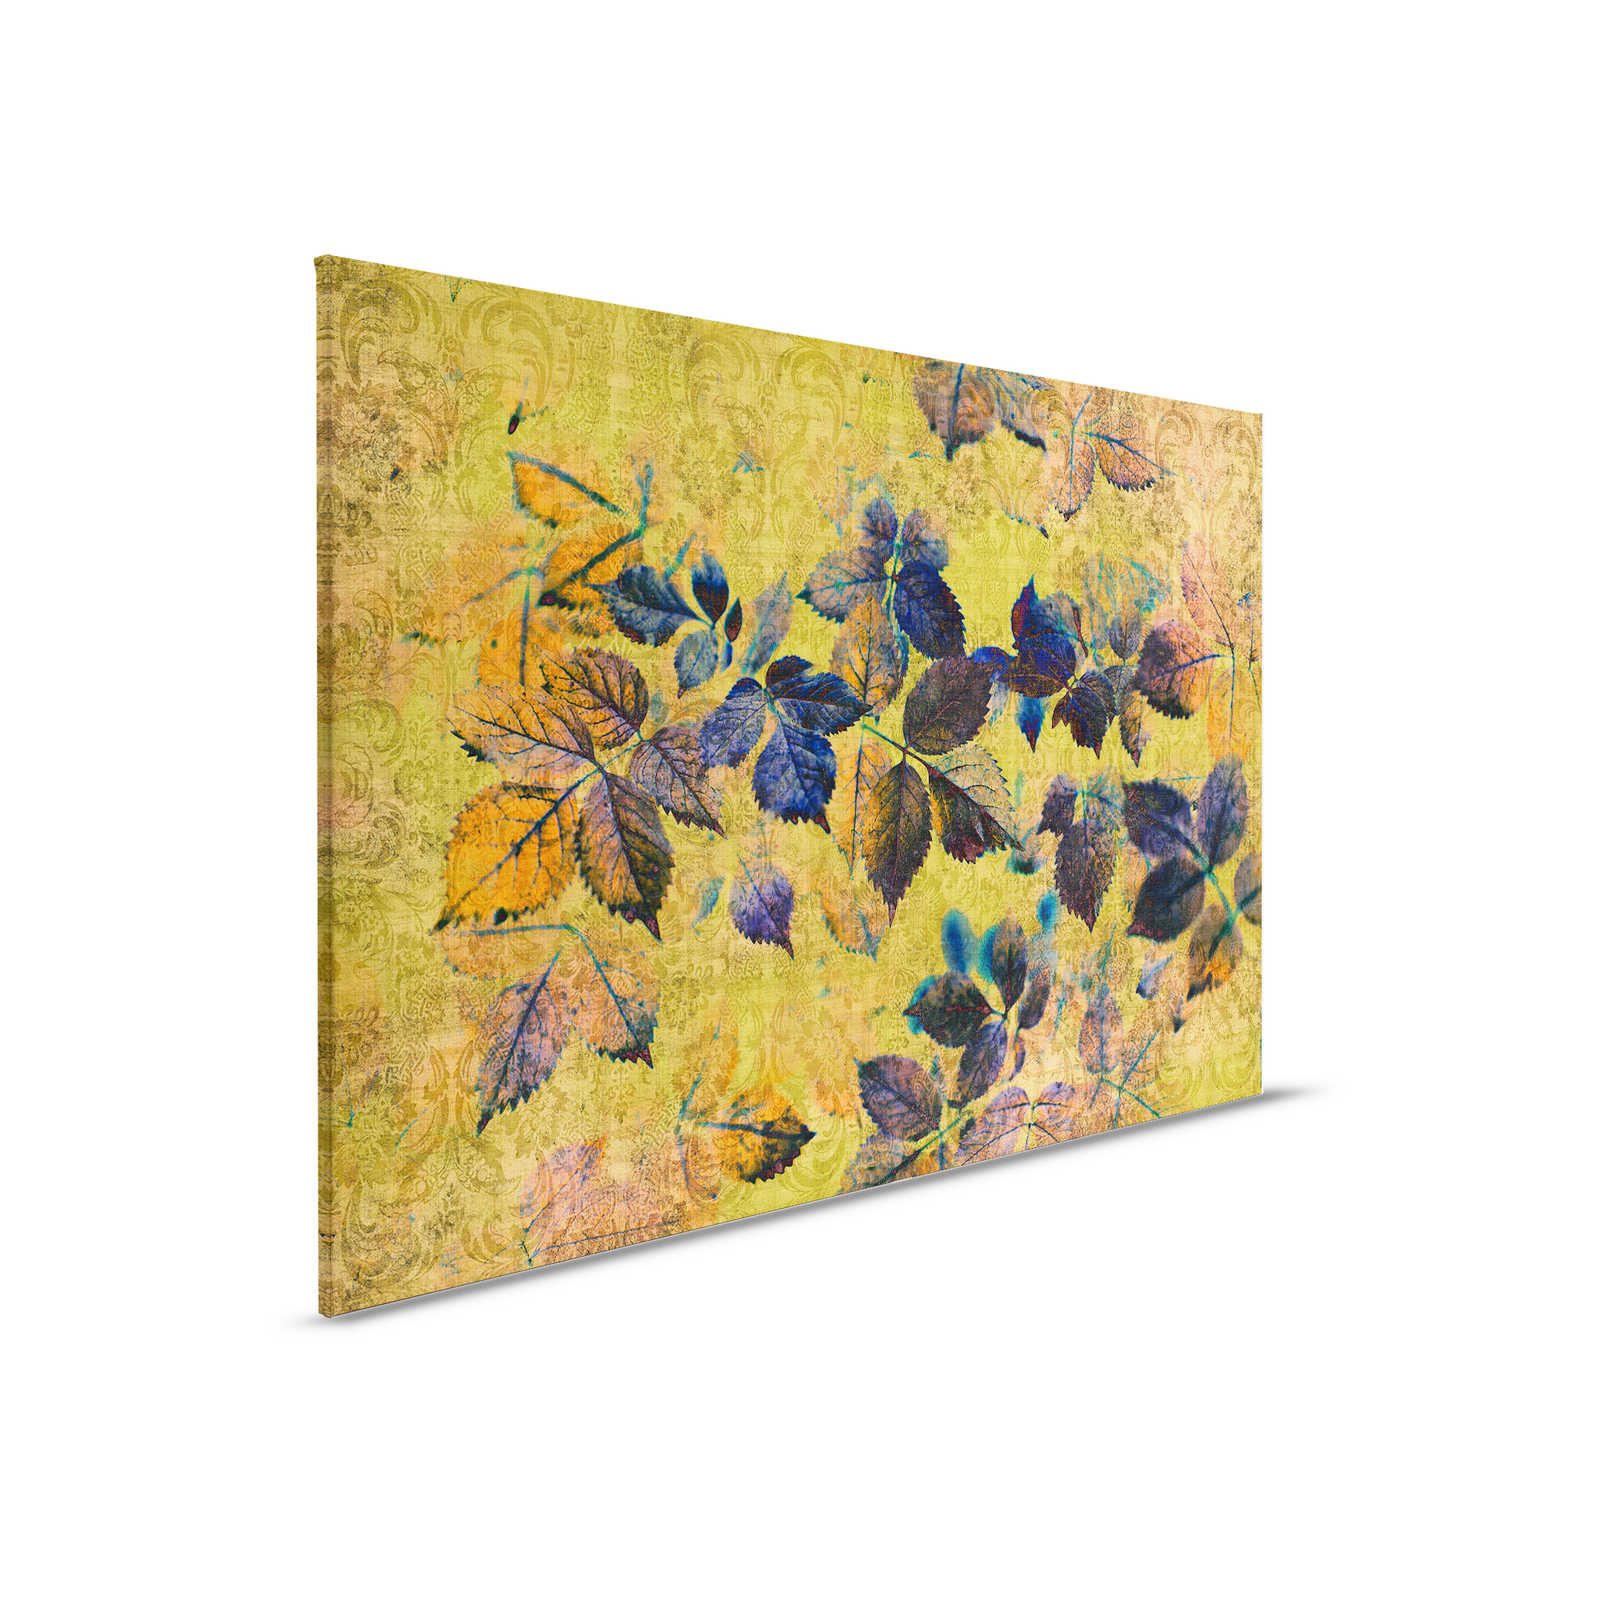 Indian summer 1 - Canvas schilderij met bladeren en ornamenten in natuurlijk linnen structuur - 0.90 m x 0.60 m
